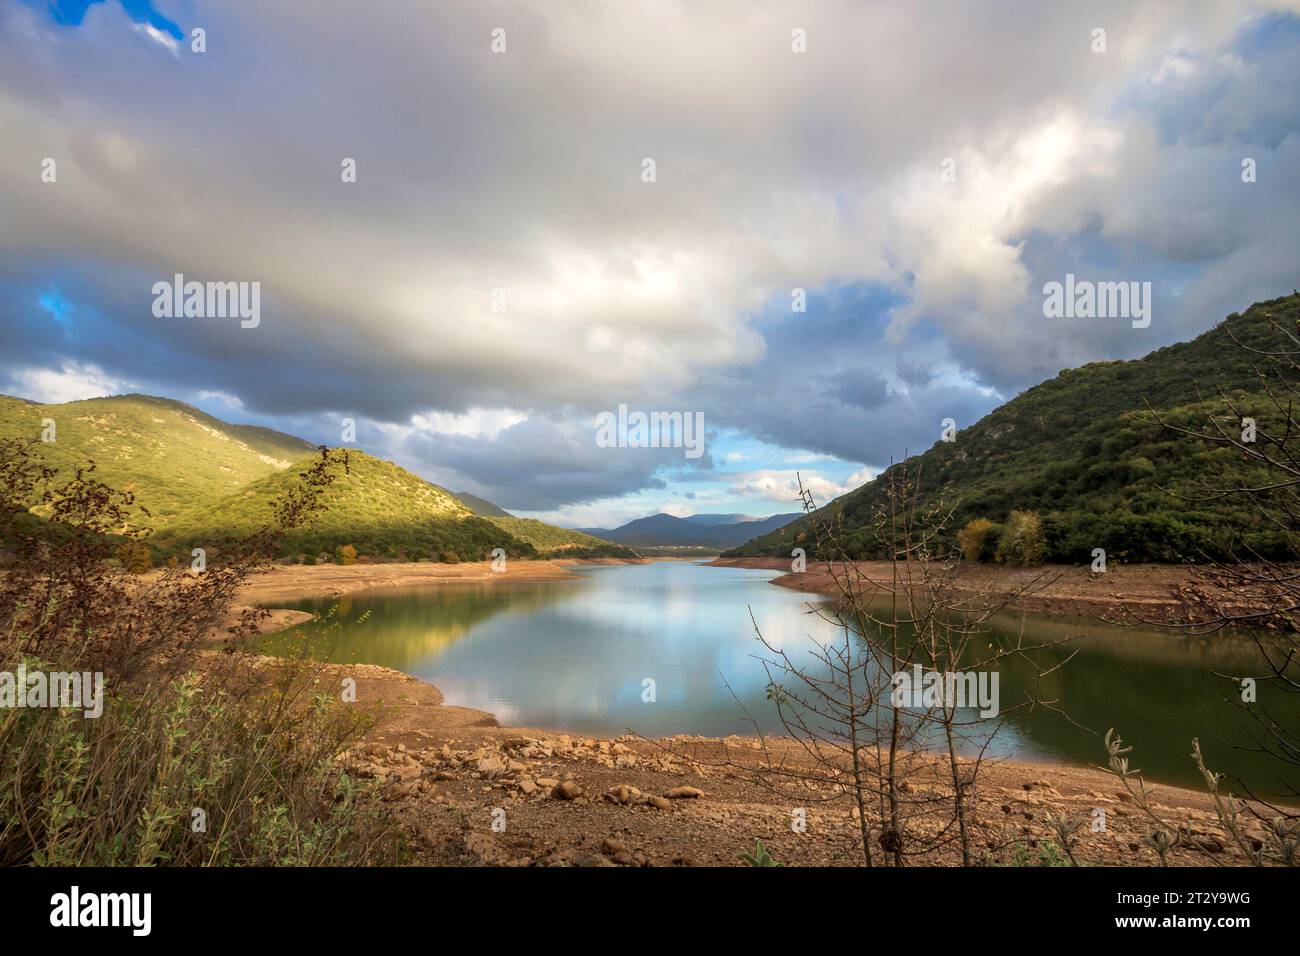 Lago Ladon, o Ladonas, un lago artificiale nato dopo la creazione di una diga idroelettrica nelle vicinanze, nella regione dell'Arcadia, Peloponneso, Grecia, Europa. Foto Stock